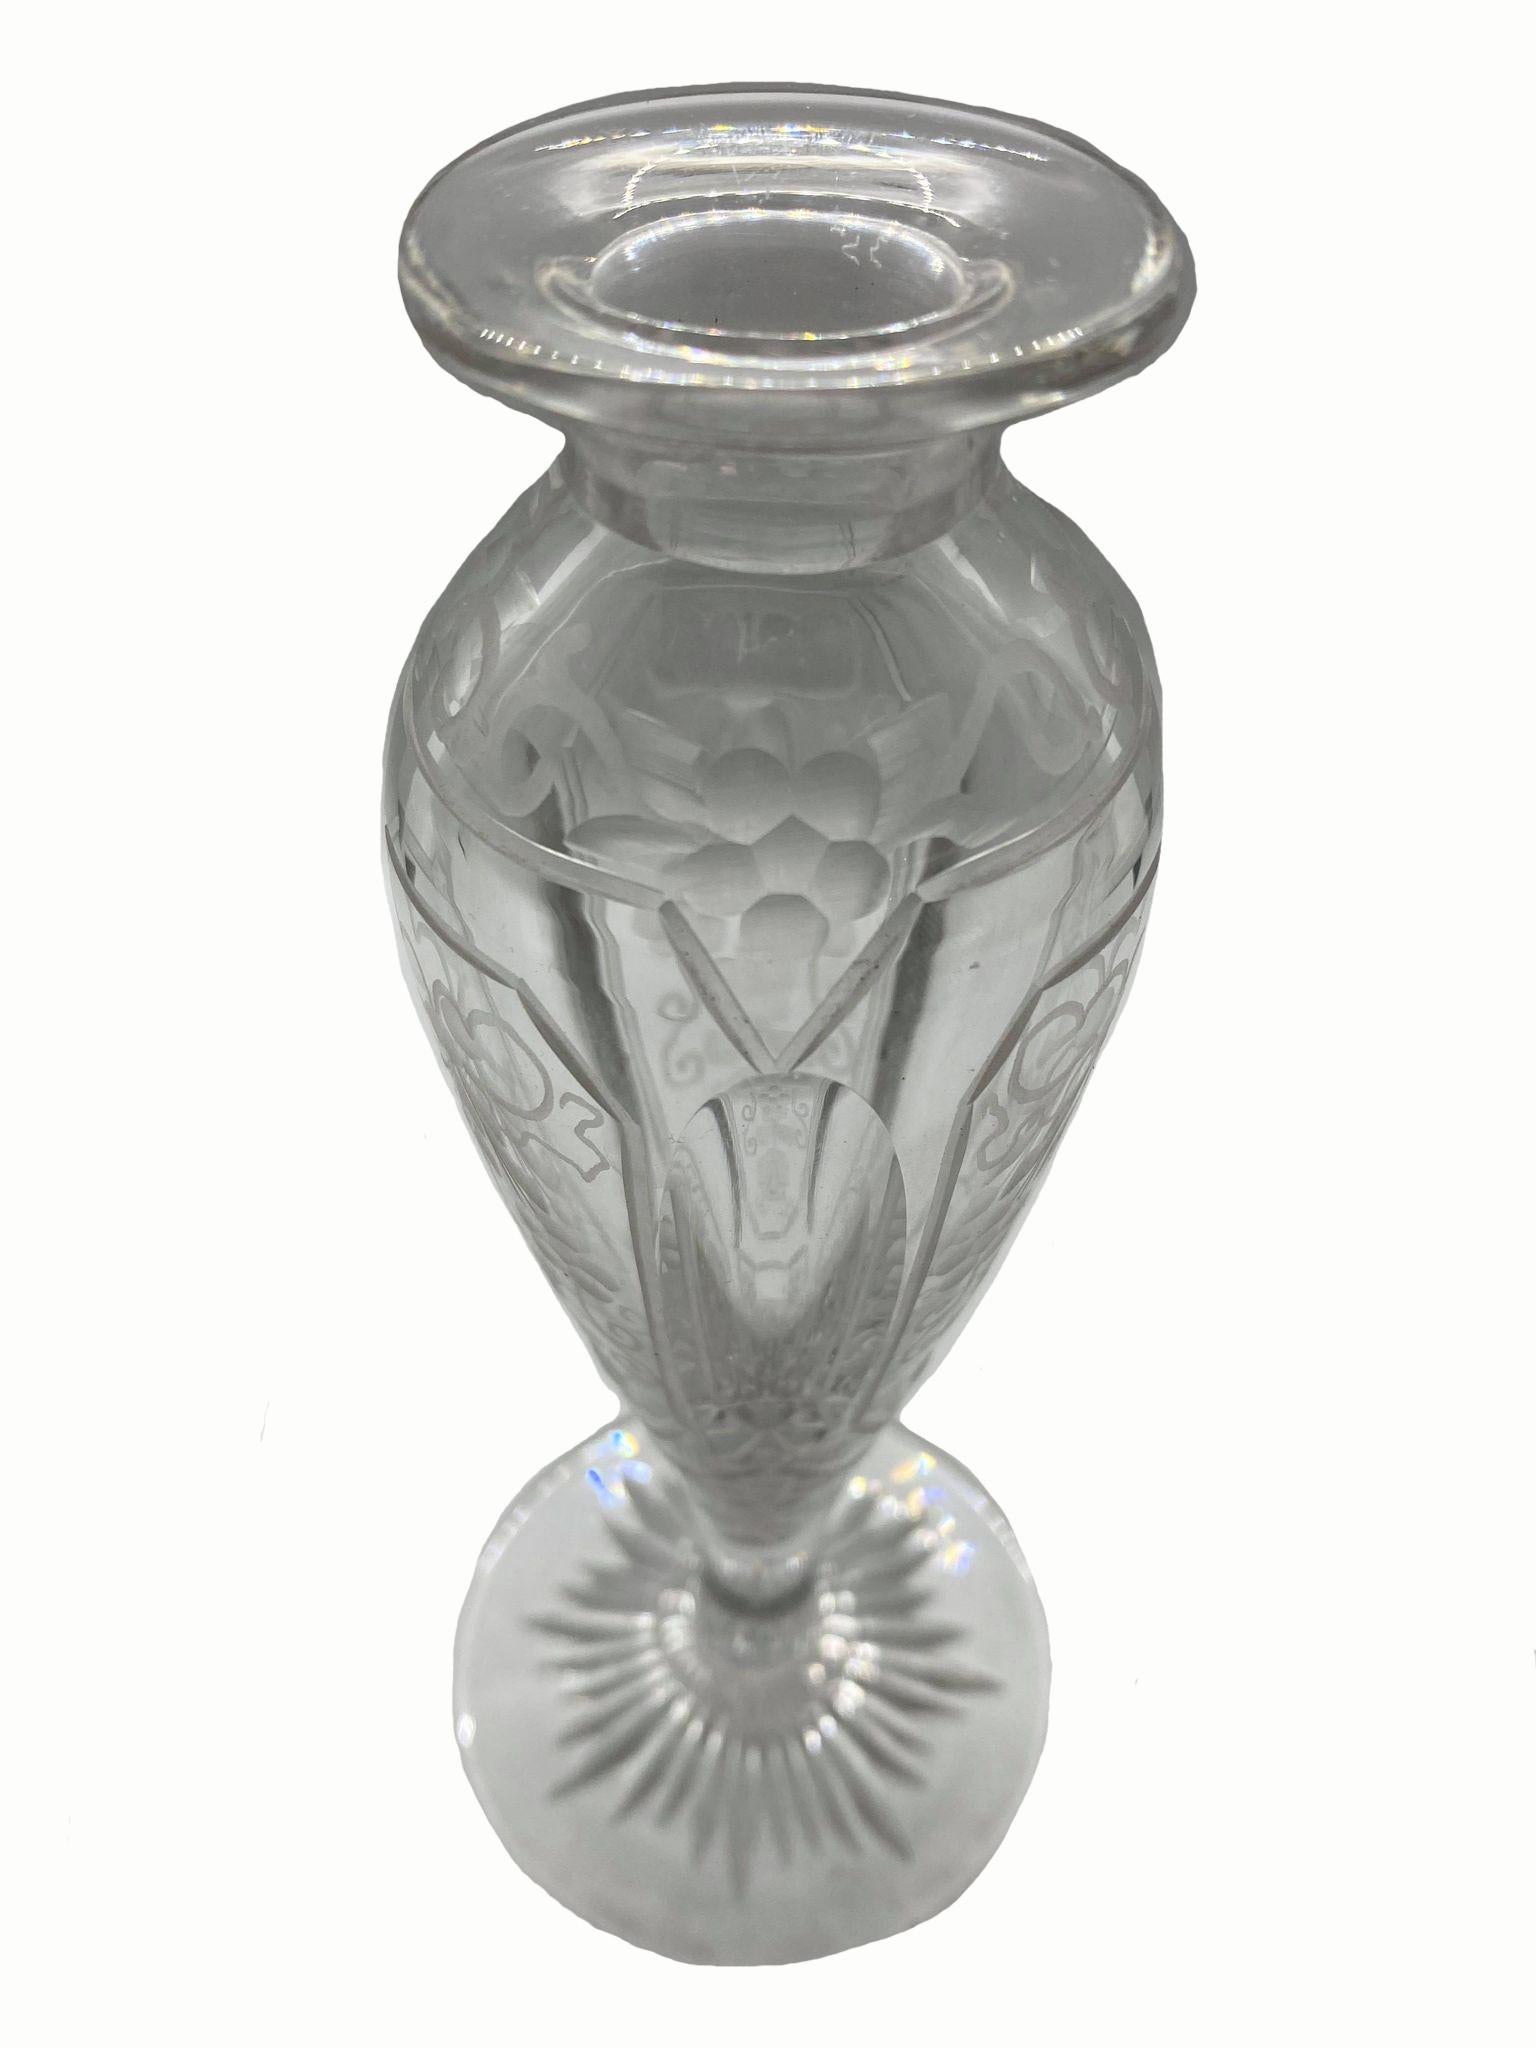 parfümflasche aus den 1920er Jahren, geätzt, mit emailliertem Cloisonné-Verschluss.